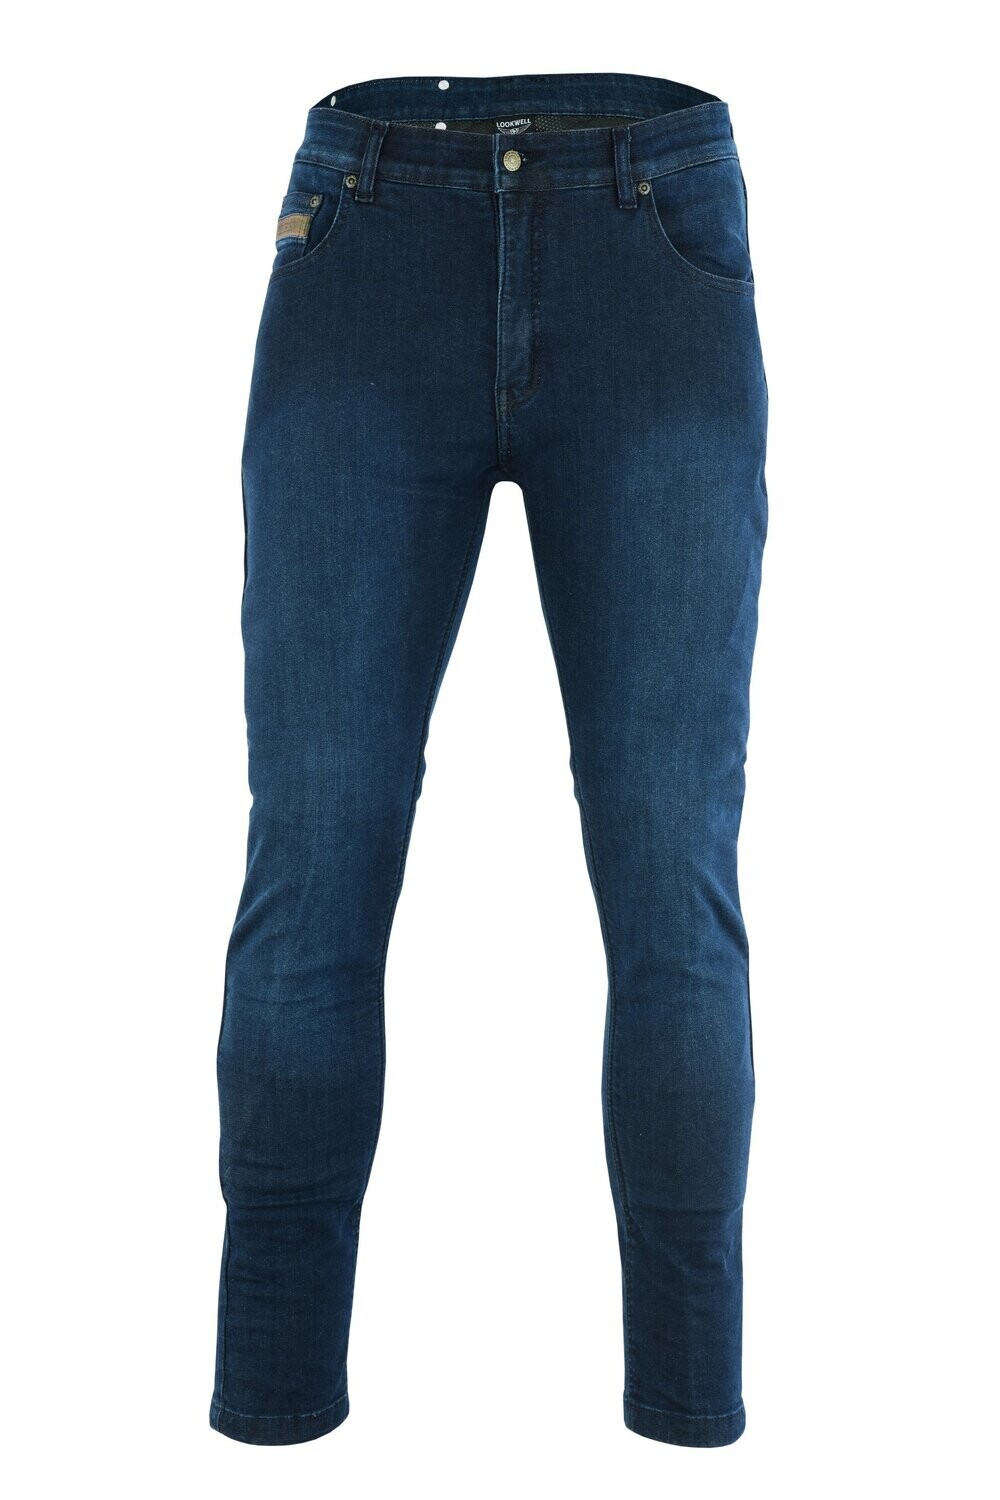 Lookwell Jaxx Jeans - Dark Blue